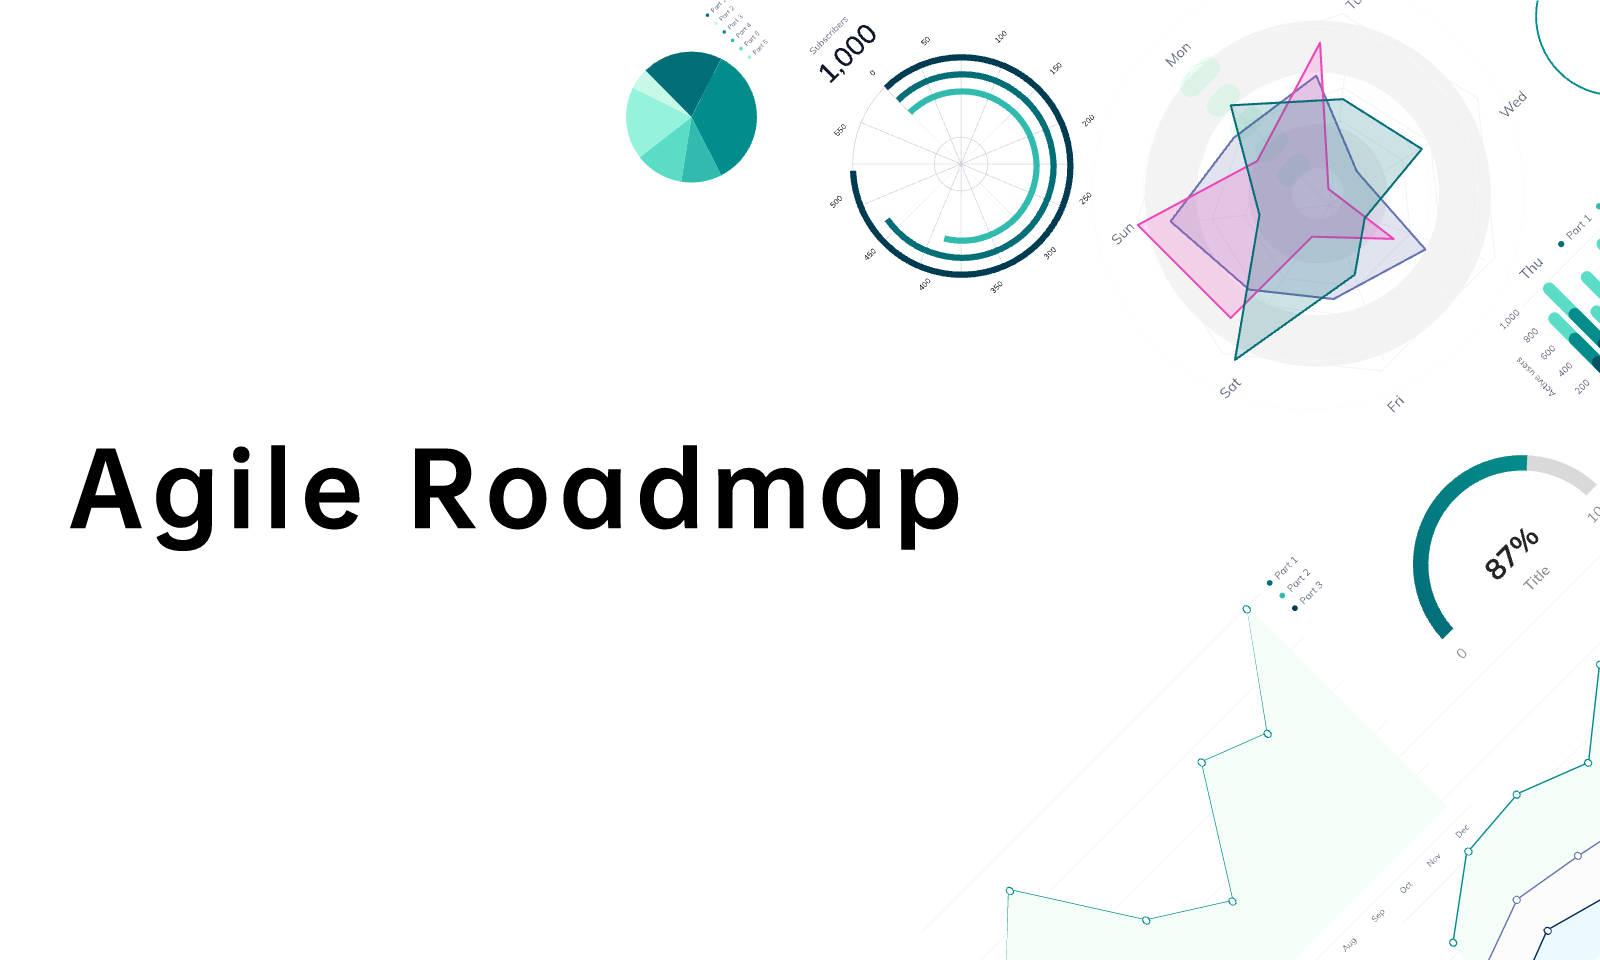 agile roadmap